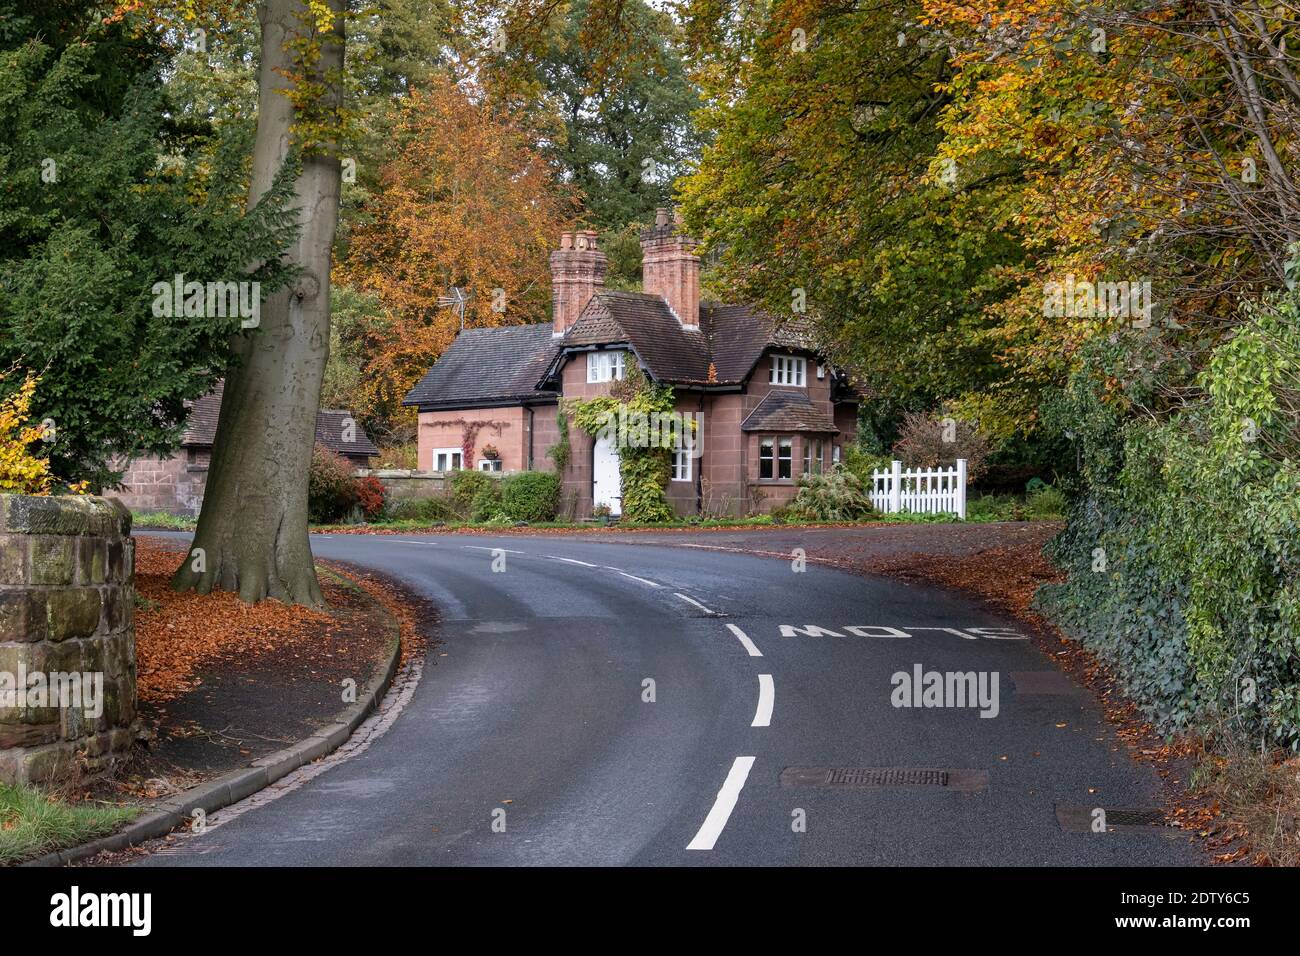 Lodge Cottage en automne, Whitegate, Cheshire, Angleterre, Royaume-Uni Banque D'Images